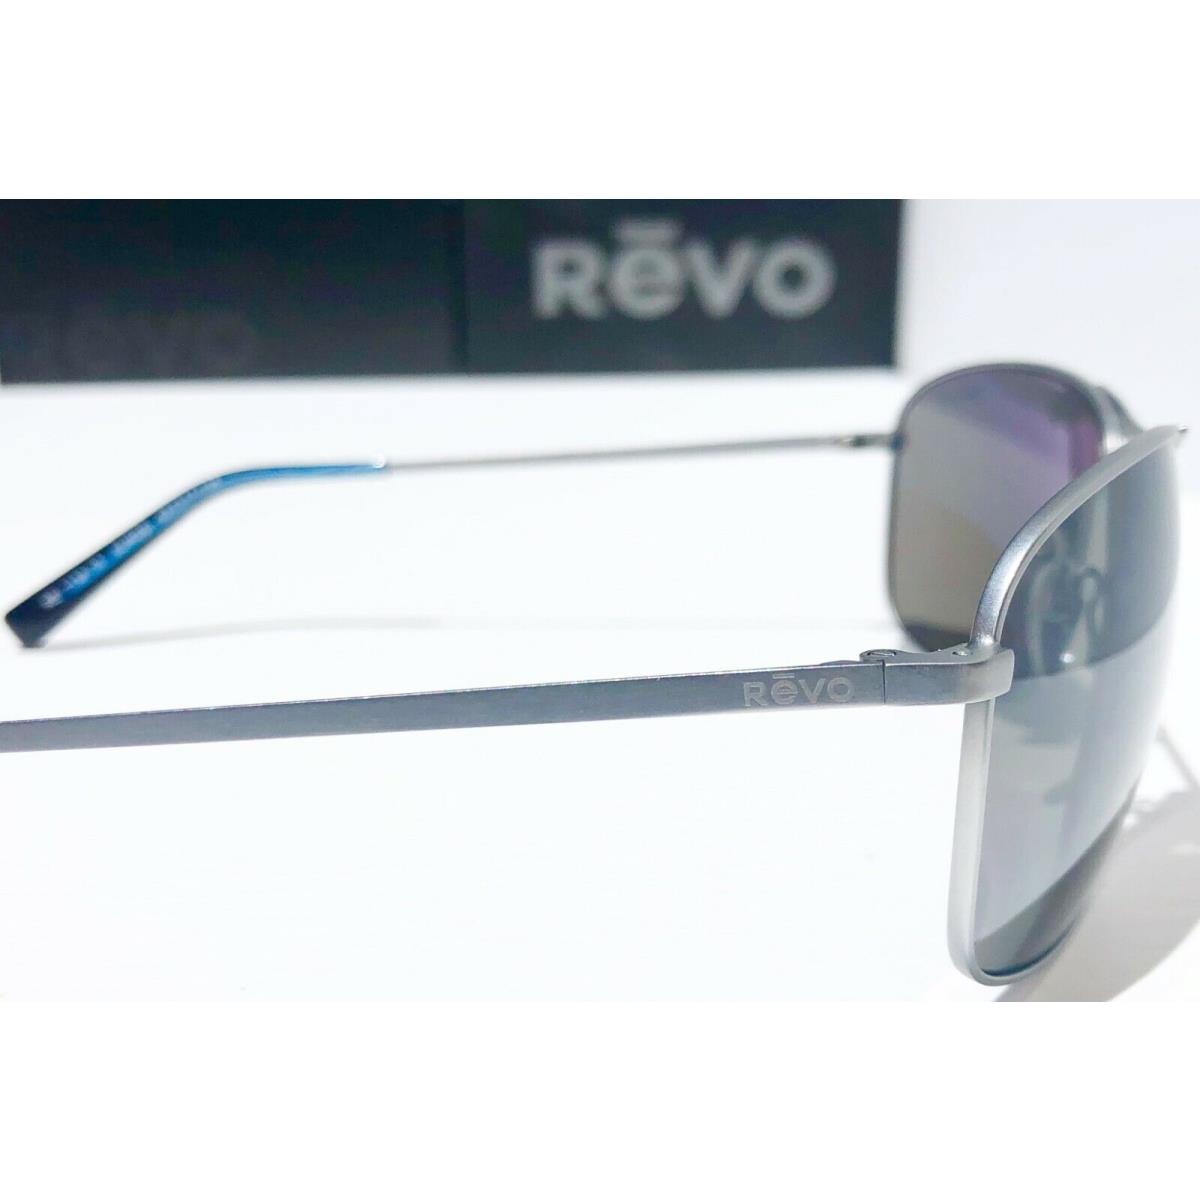 Revo sunglasses Surge - Silver Frame, Grey Lens